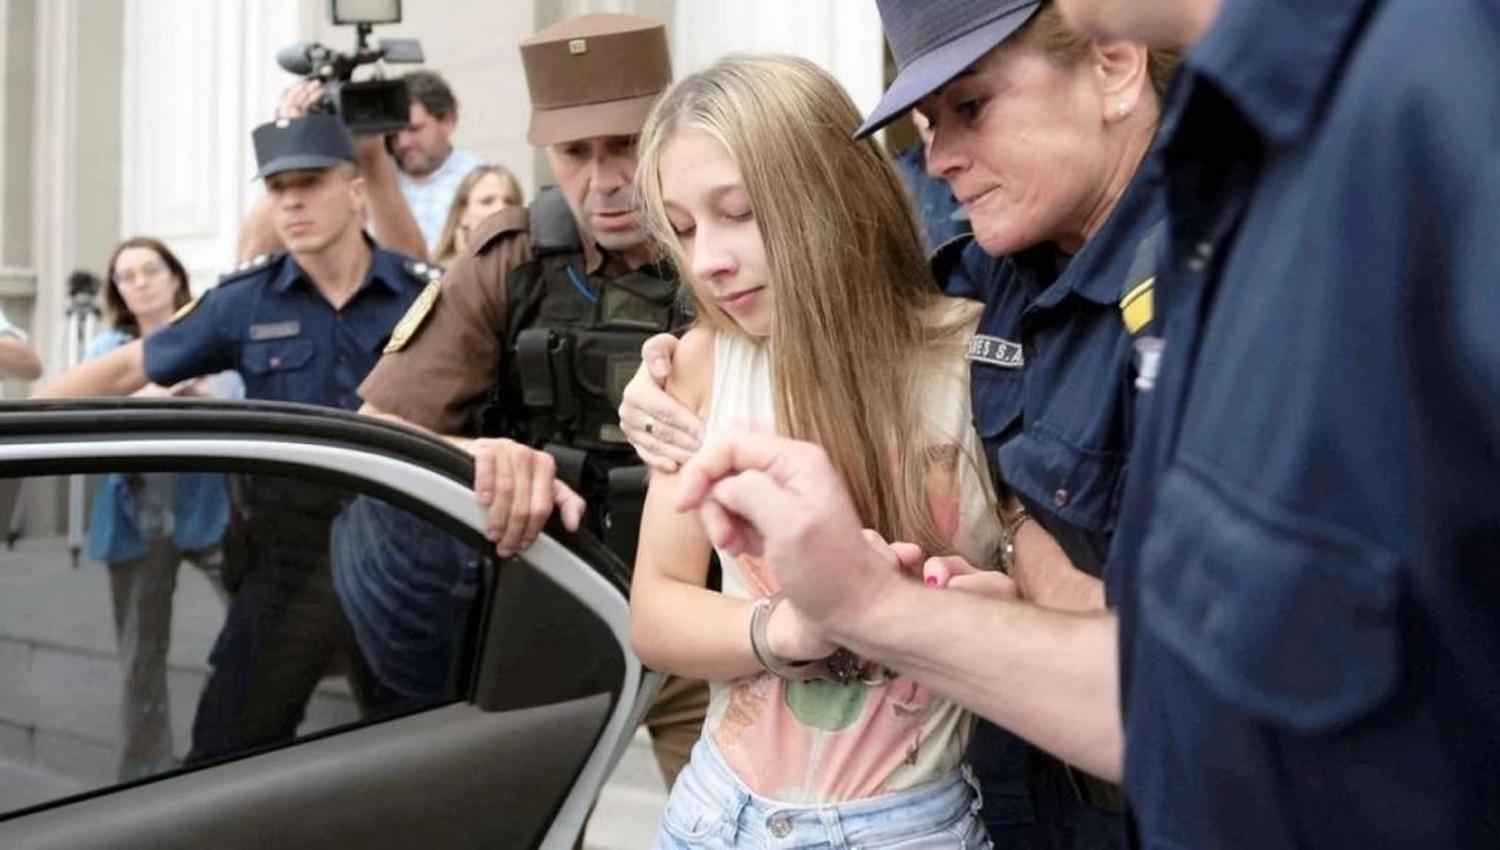 CASO NAHIR GALARZA. Momento de la detención de la joven. FOTO TOMADA DE GRUPOPOST.COM